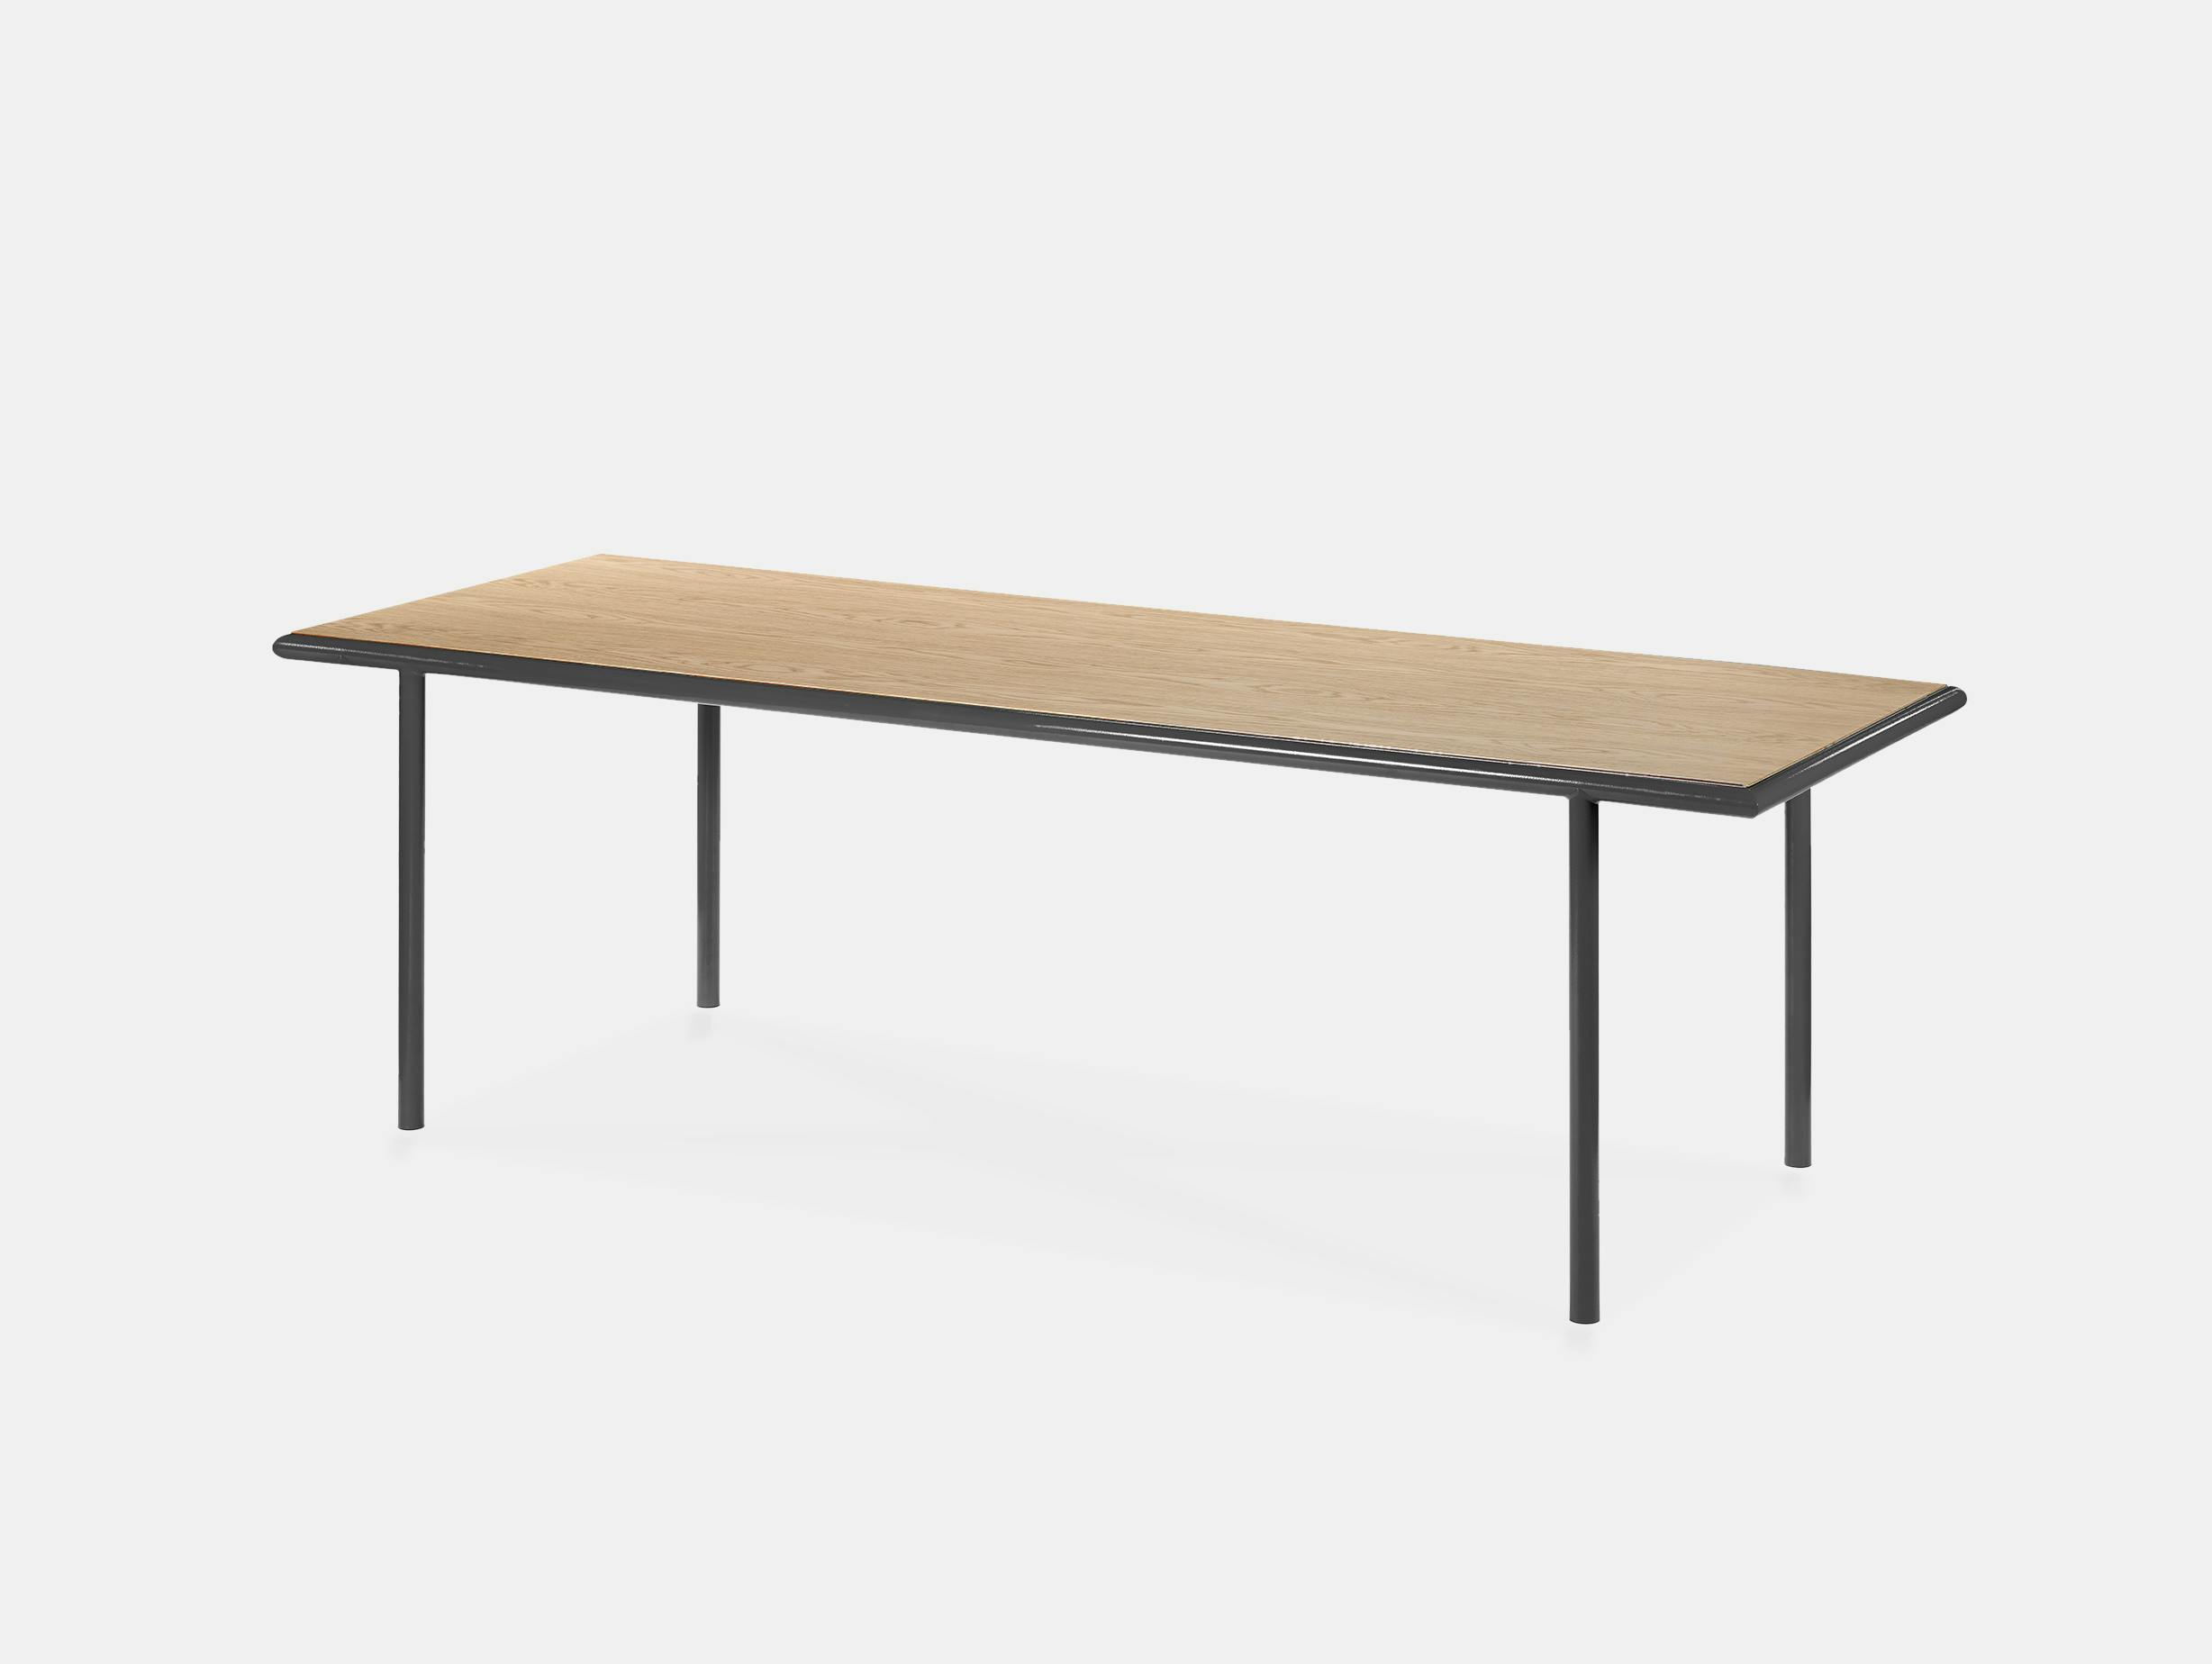 Muller van severen wooden table rectangular black oak